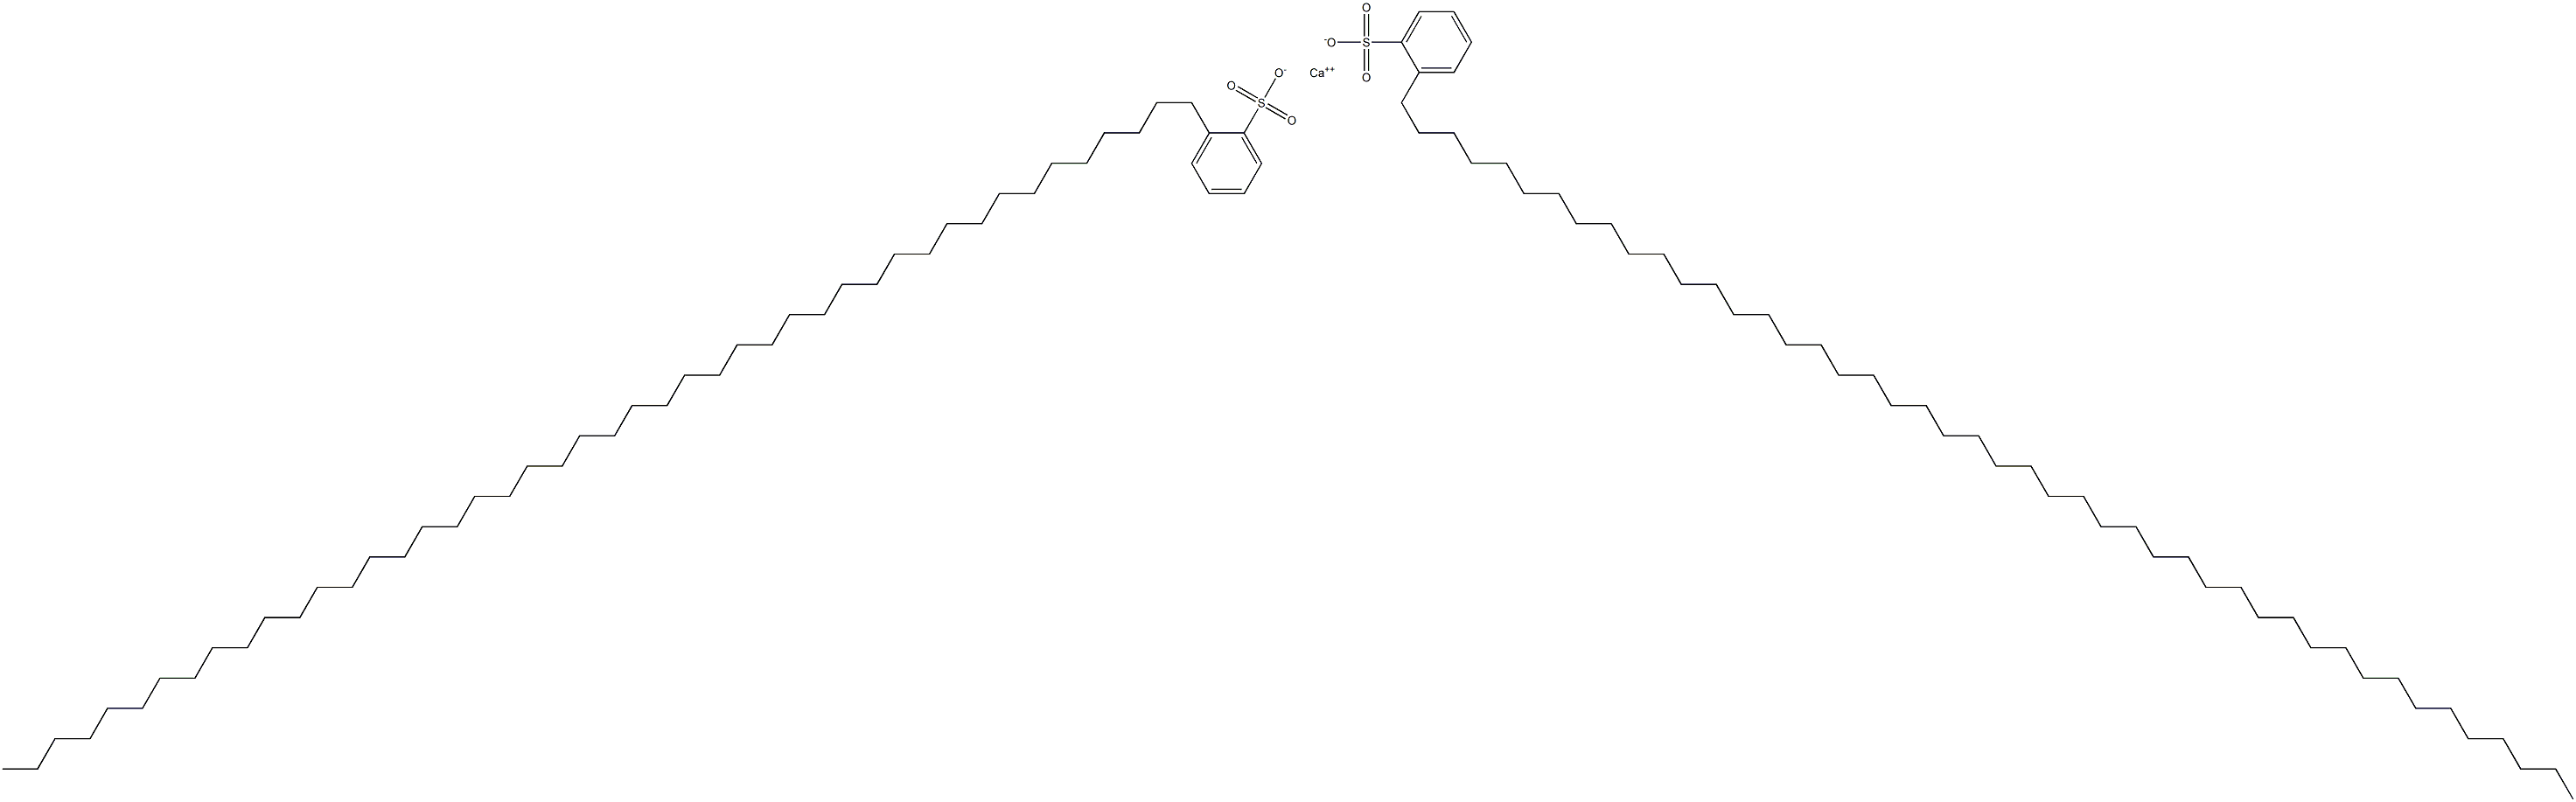  Bis[2-(hexatetracontan-1-yl)benzenesulfonic acid]calcium salt